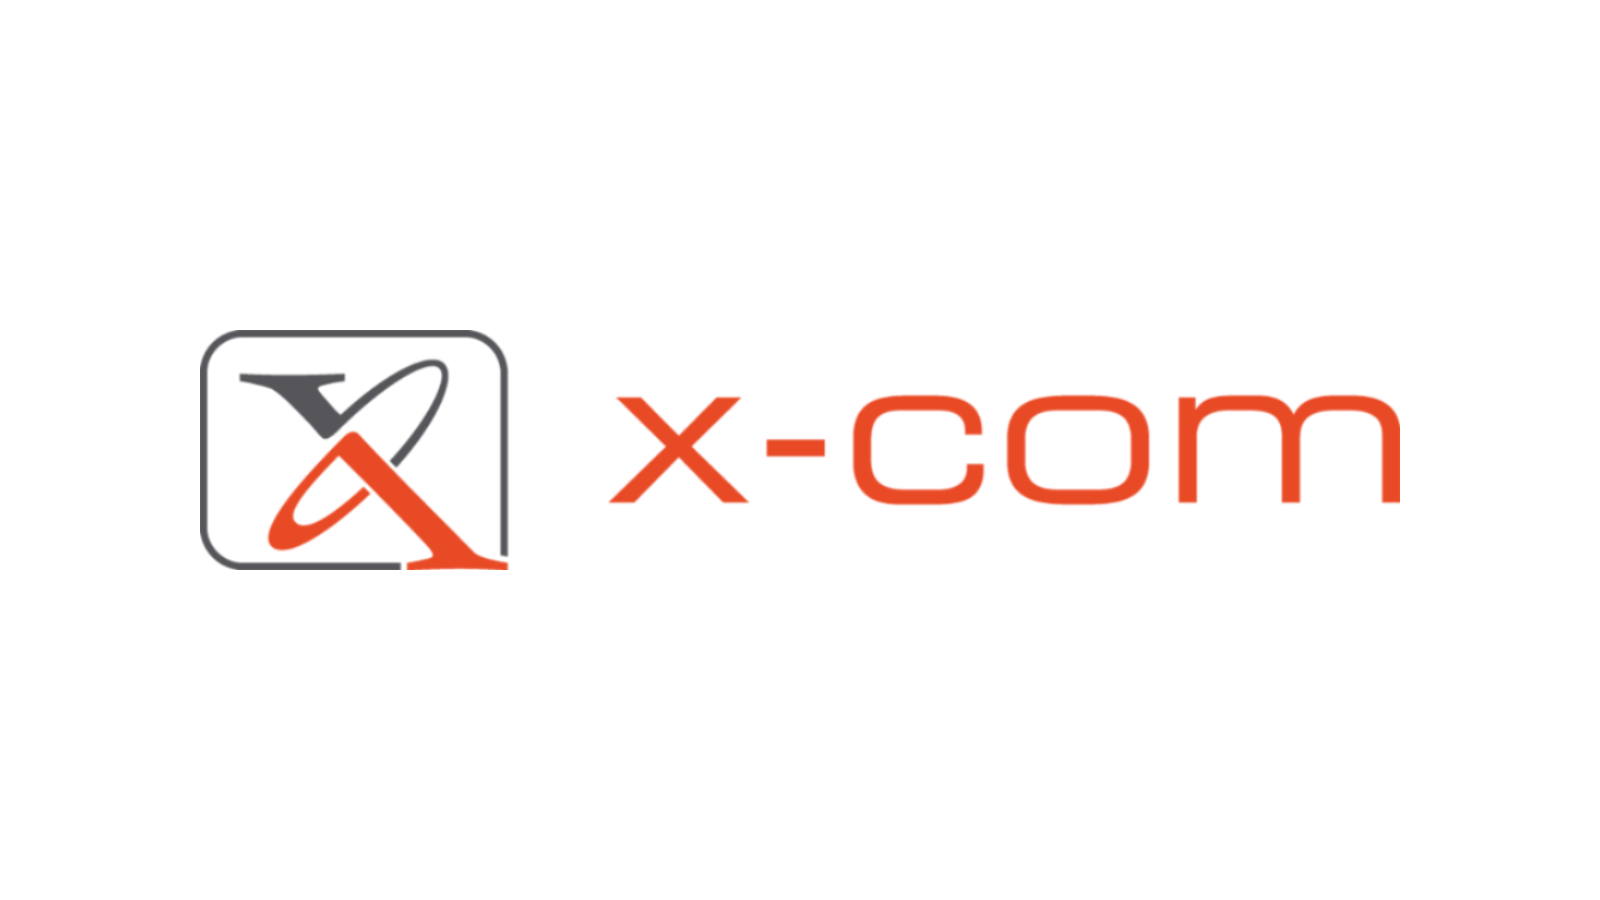 X-com partneroverzicht logo